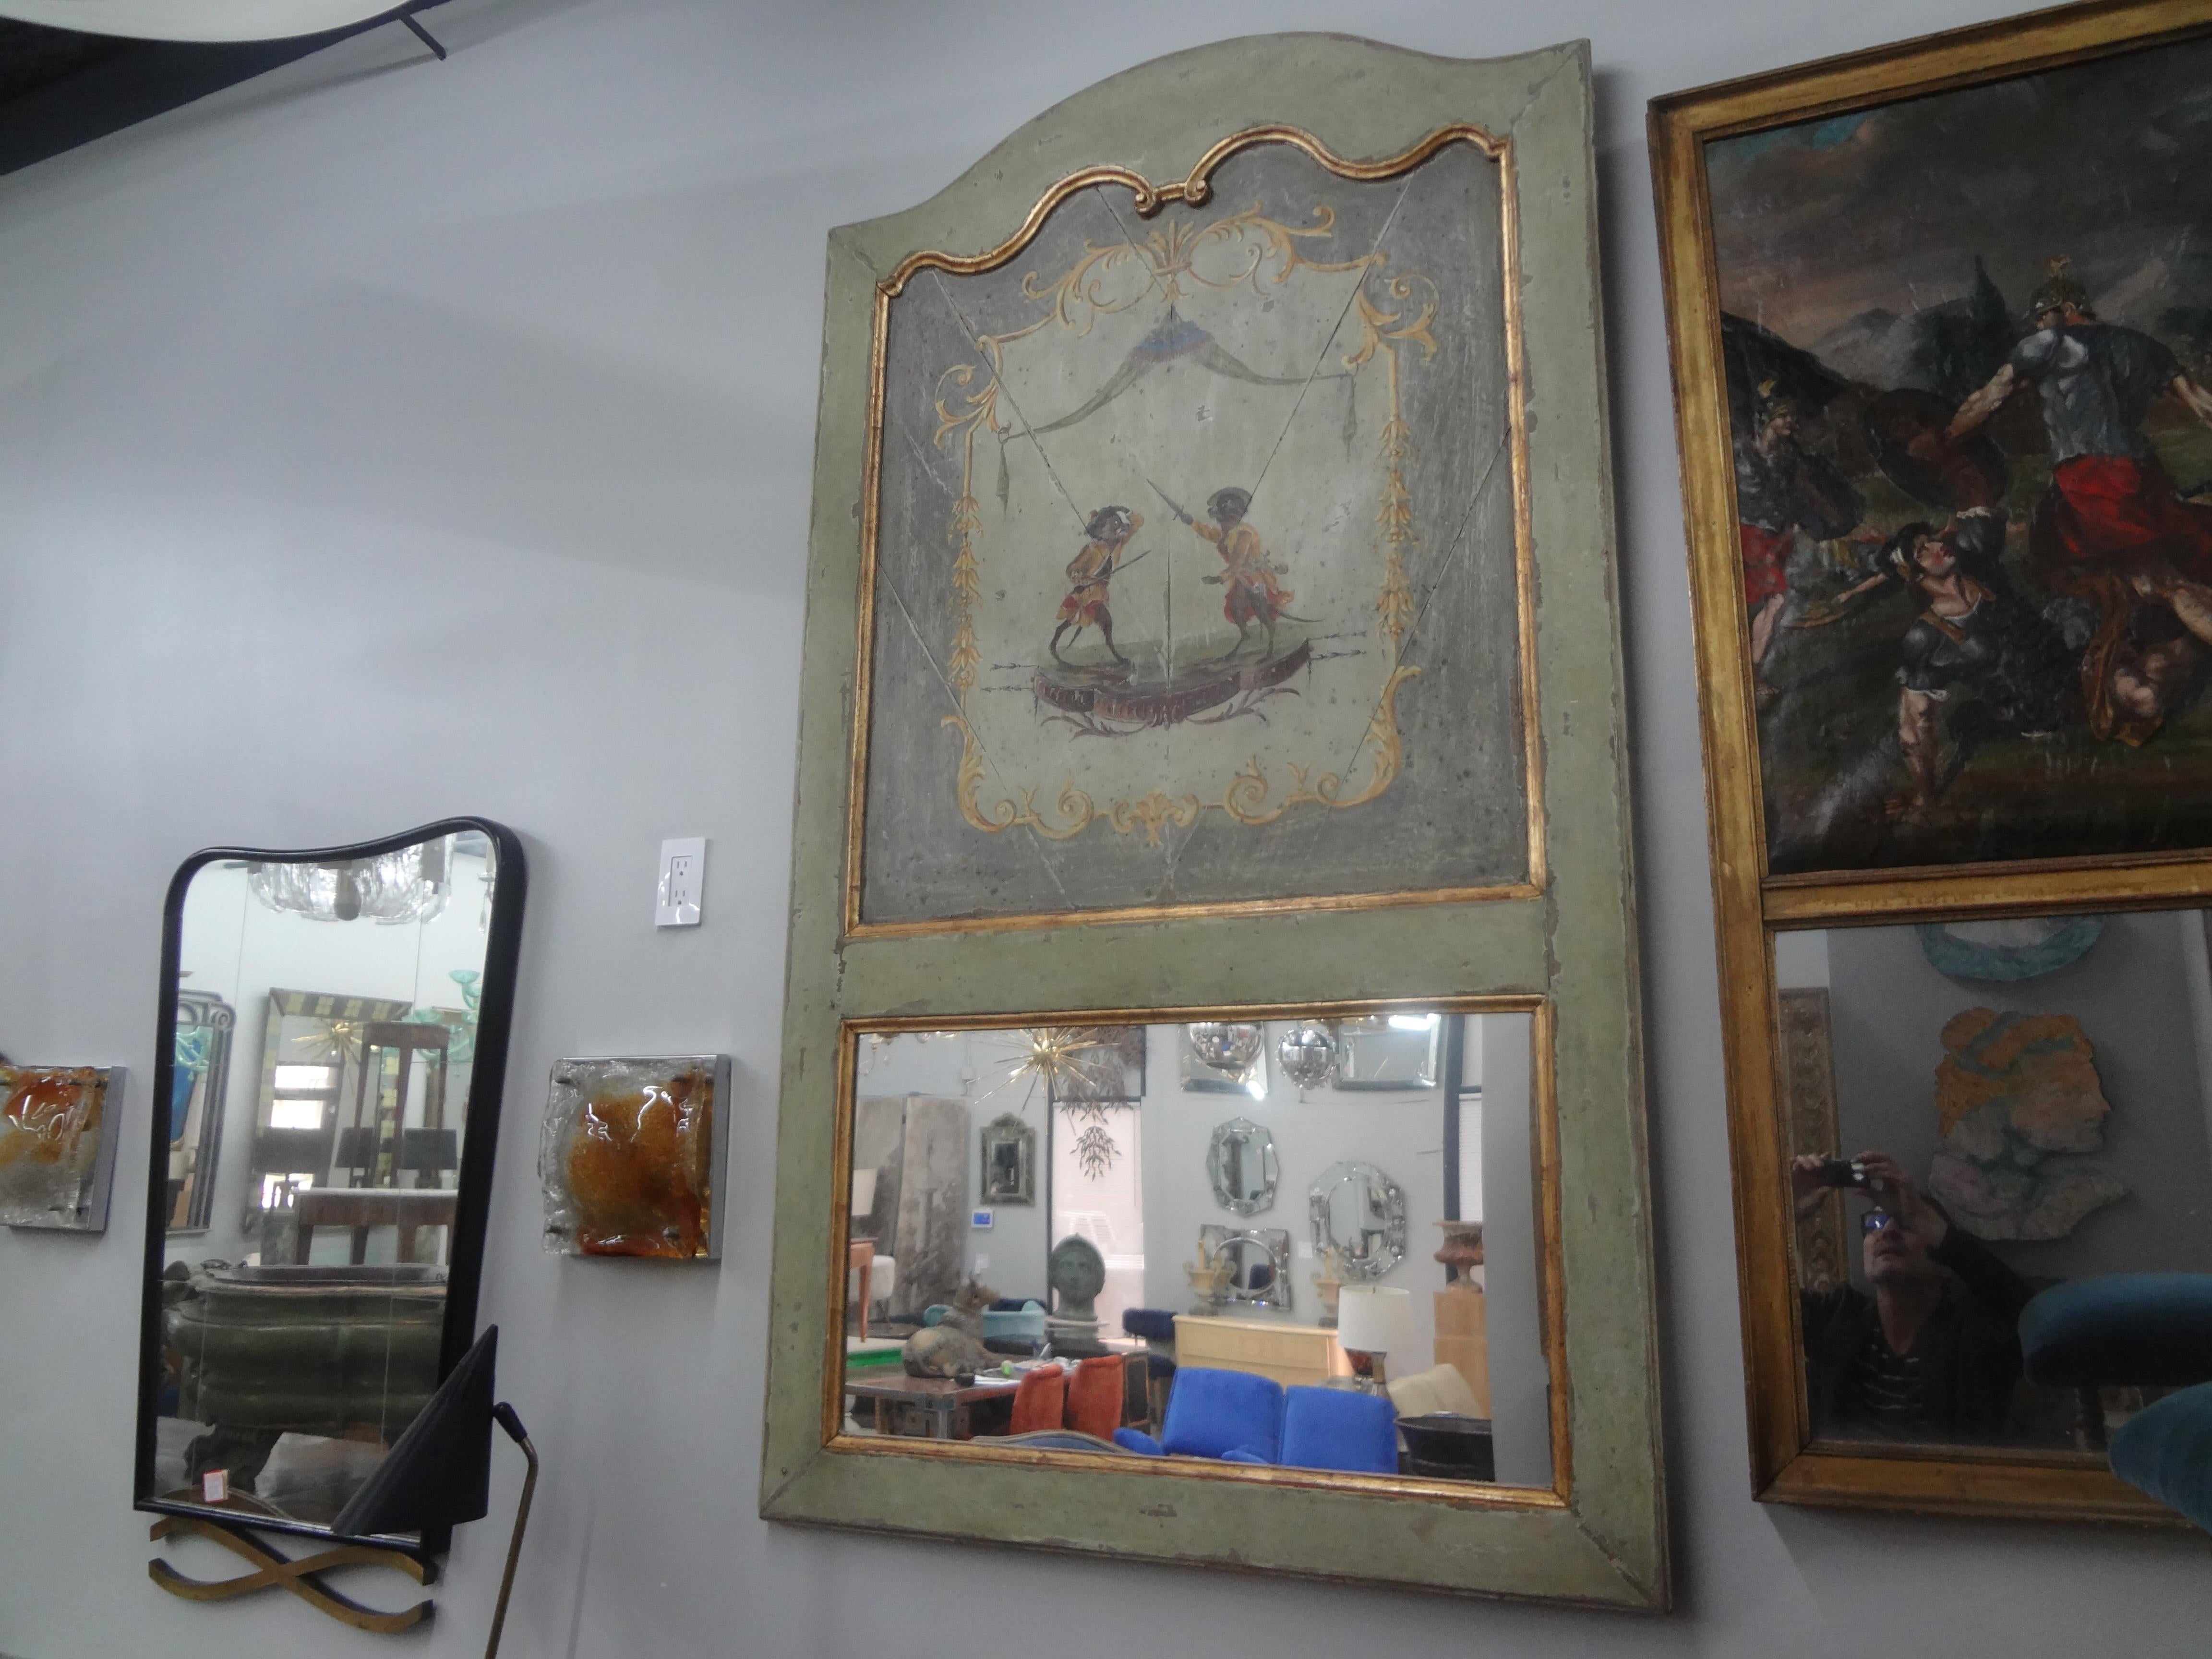 18. Jahrhundert Französisch Louis XVI Boiserie Trumeau Spiegel.
Dieses wunderschöne französische Boiserie-Trumeau aus dem 18. Jahrhundert zeigt zwei Affen vor einem Chinoiserie-Hintergrund. Der ungewöhnlichste Statement-Spiegel!